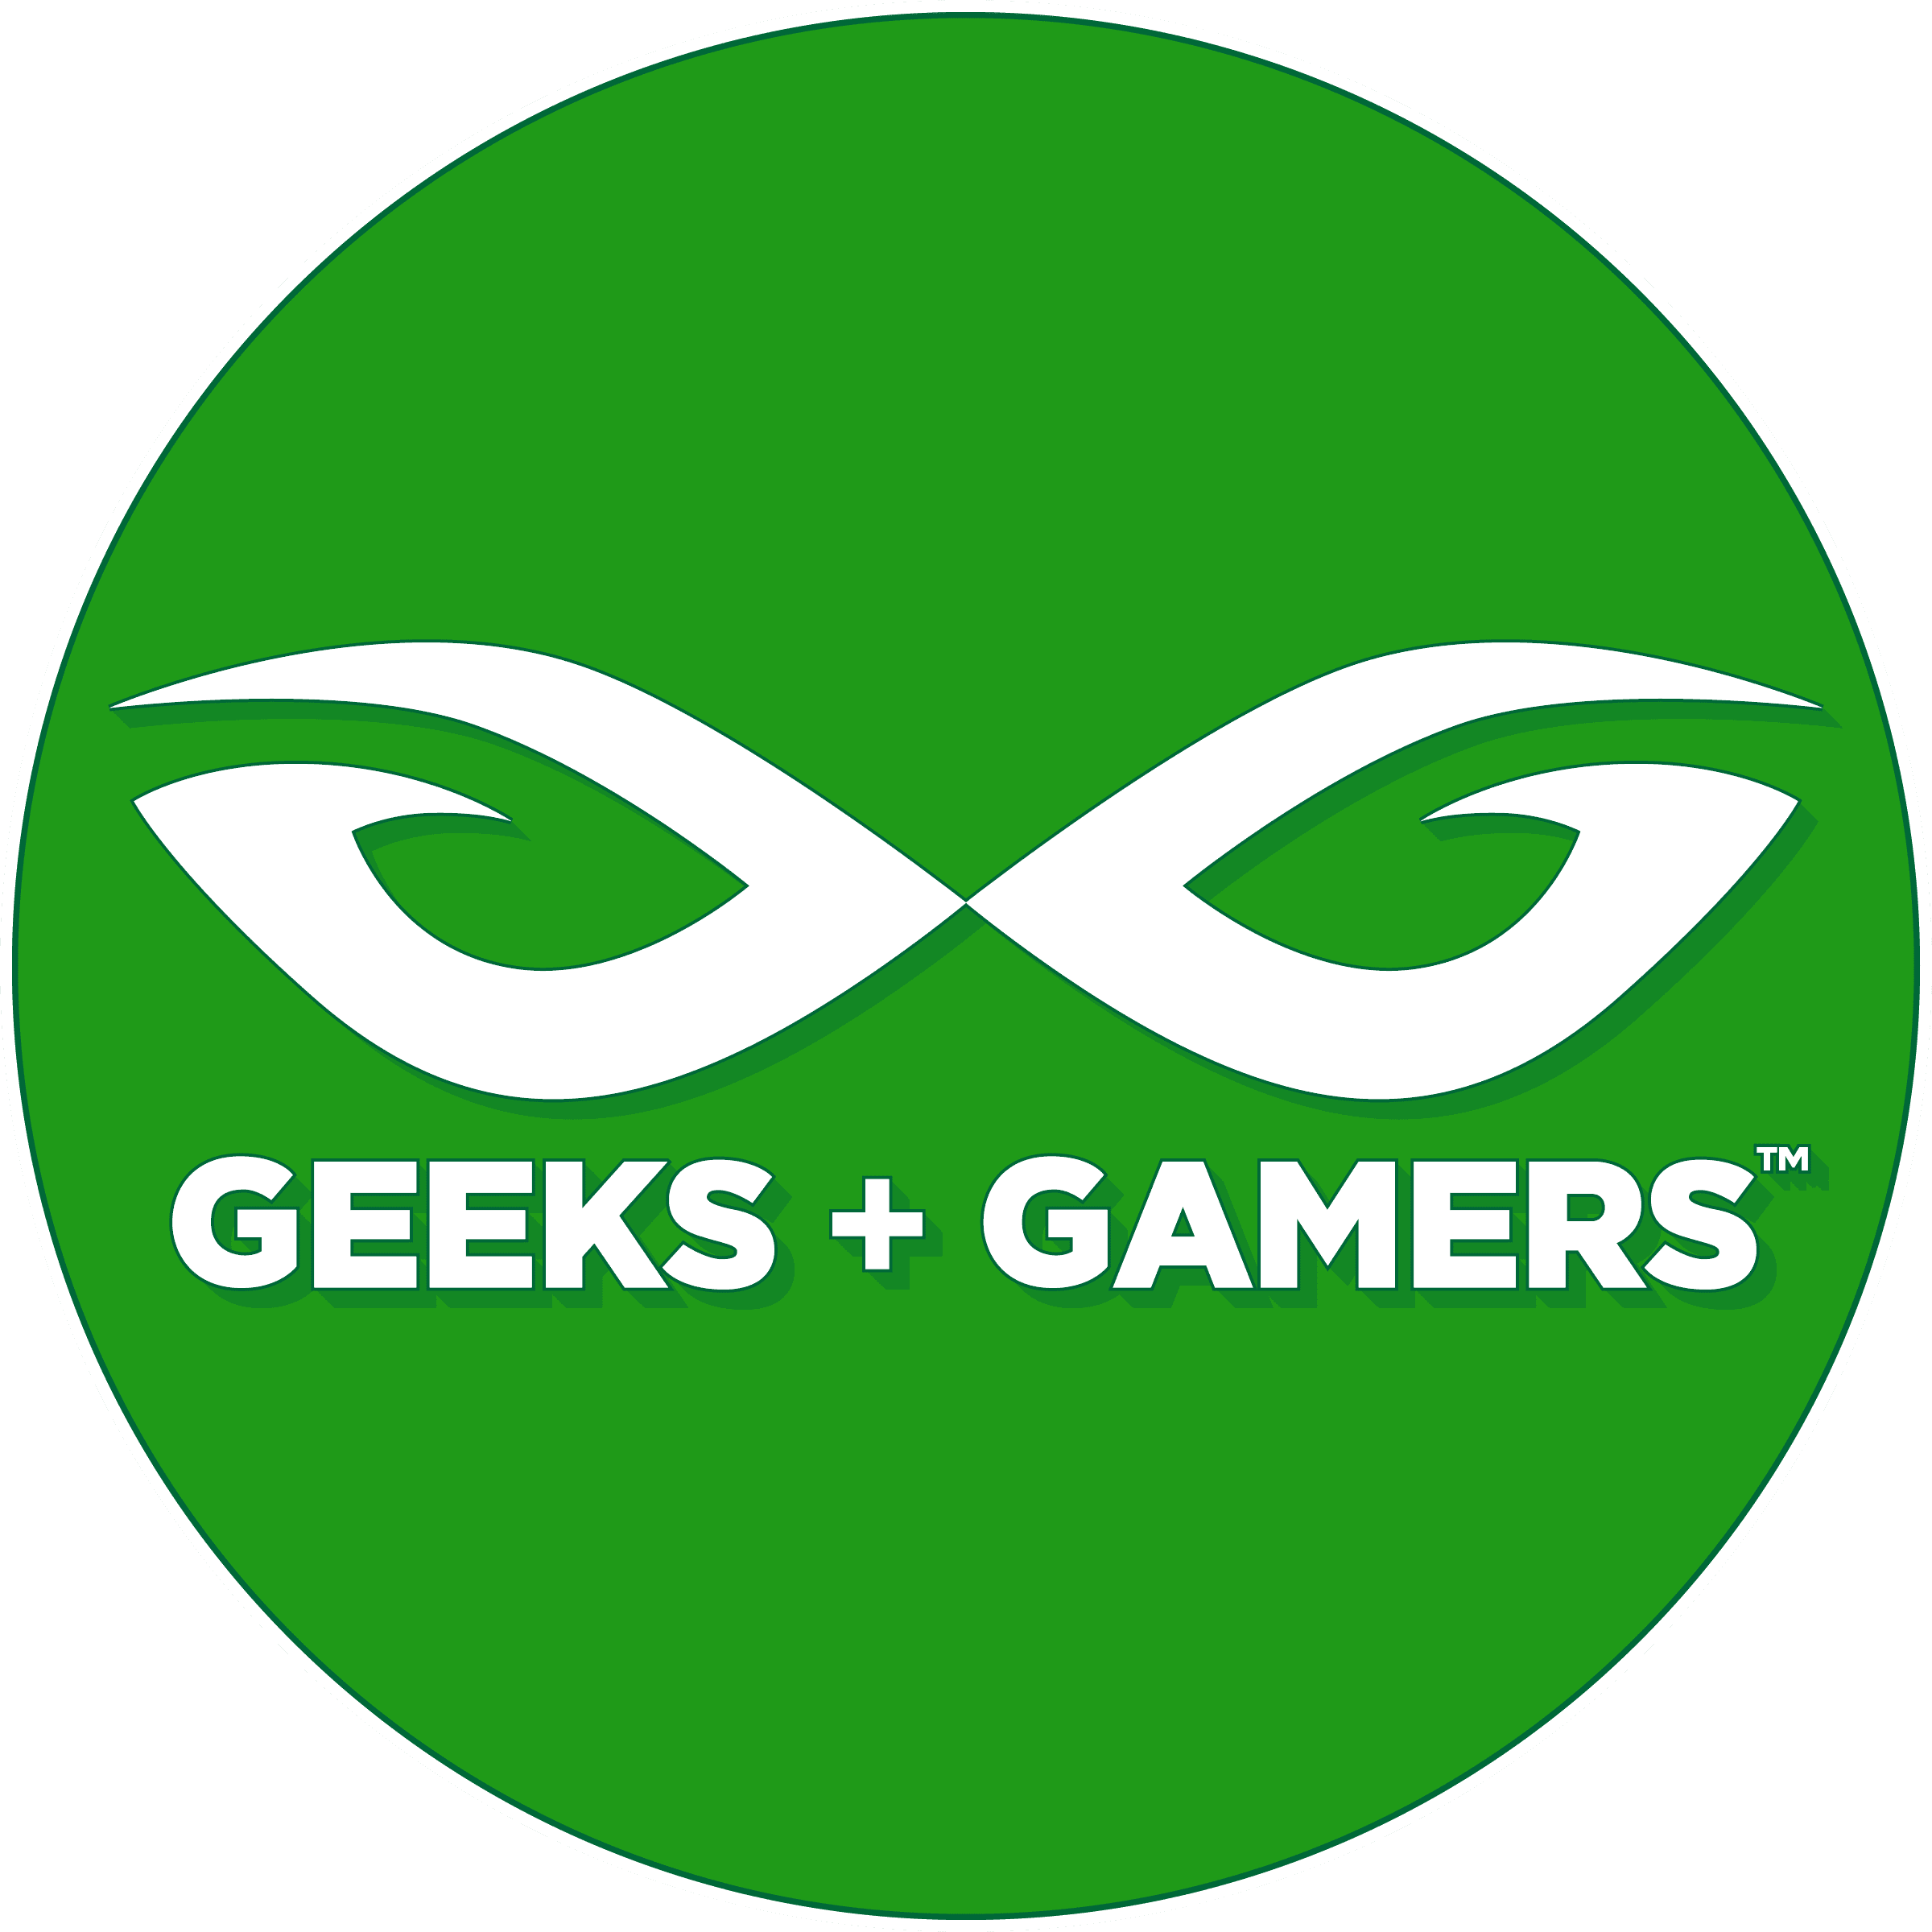 Geeks + Gamers